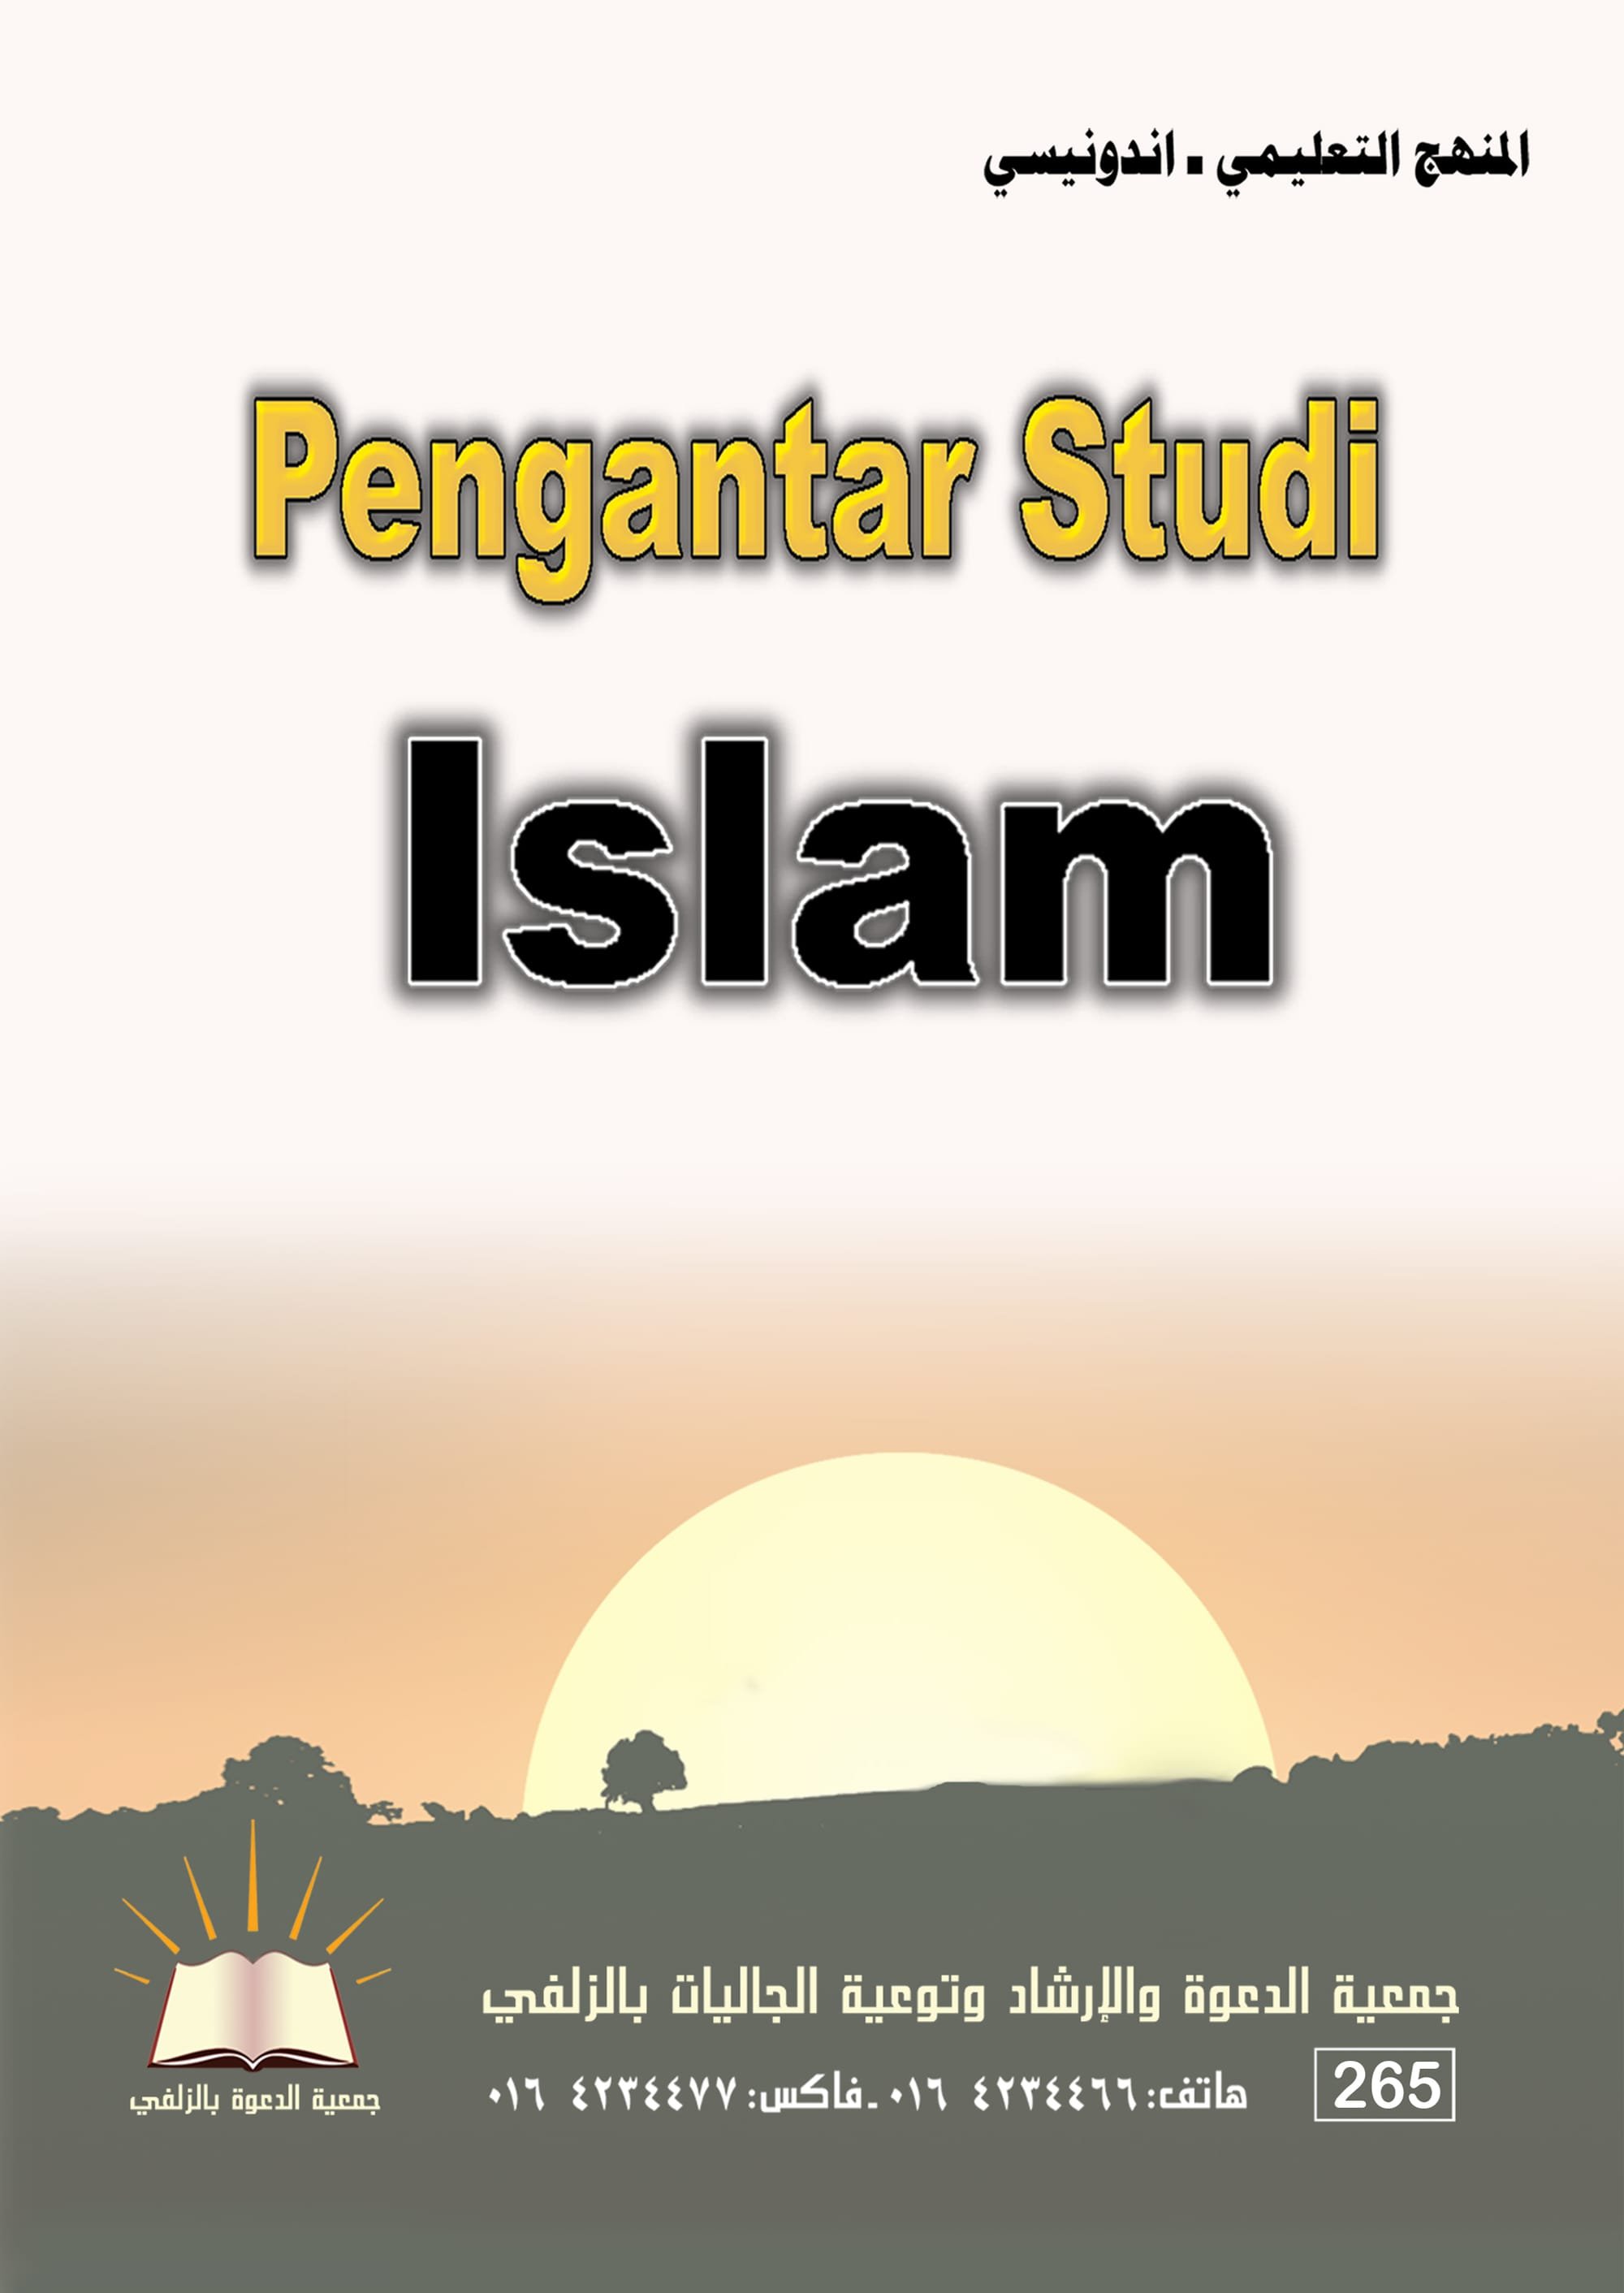 Pengantar Studi Islam - المنهج التعليمي